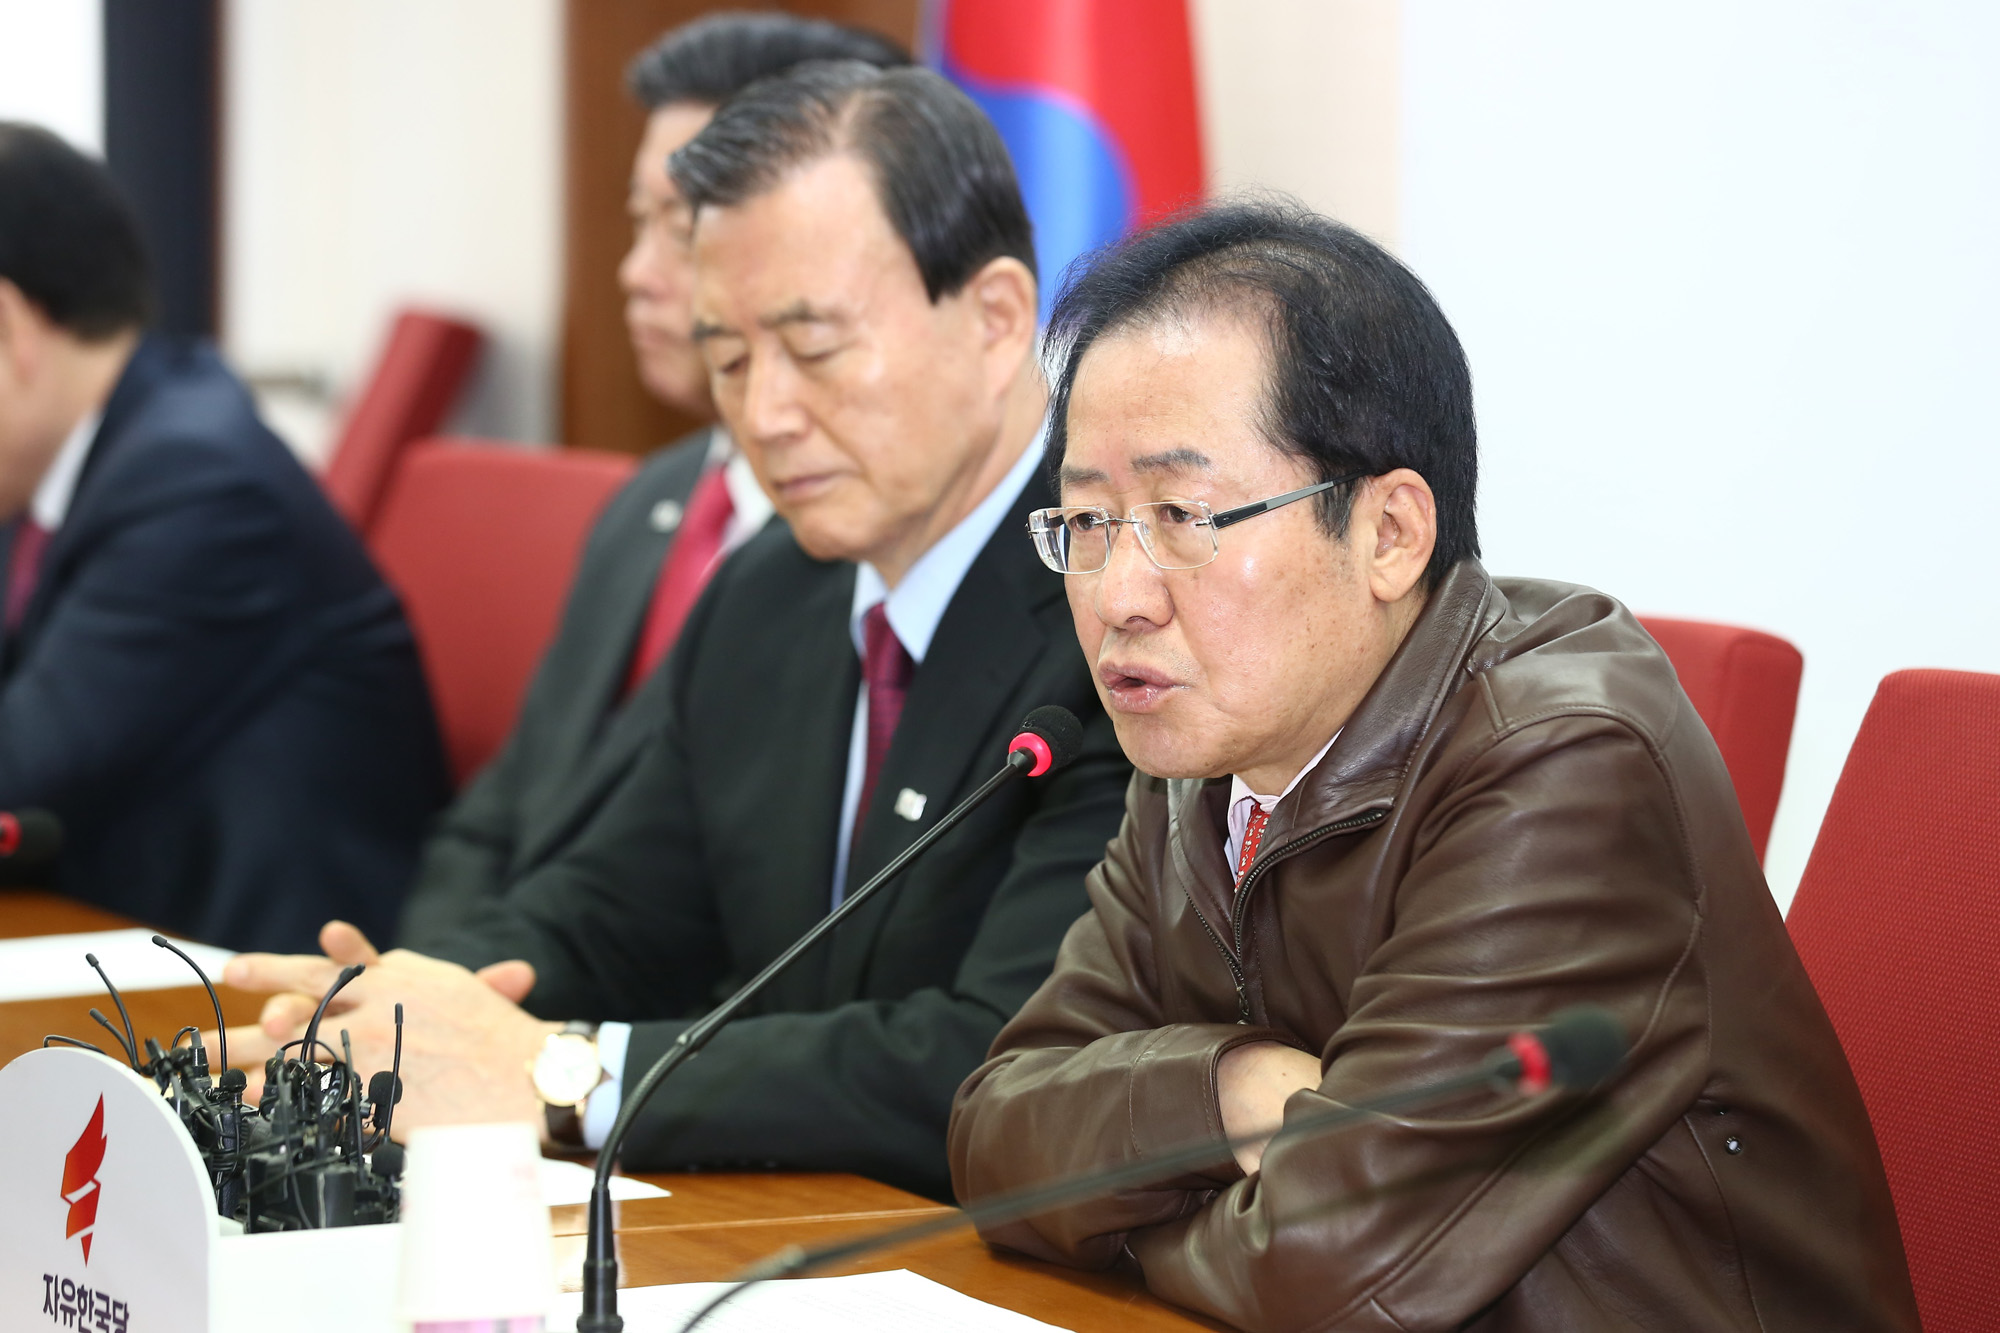 정치국회;자유한국당총괄기획단;홍준표대표